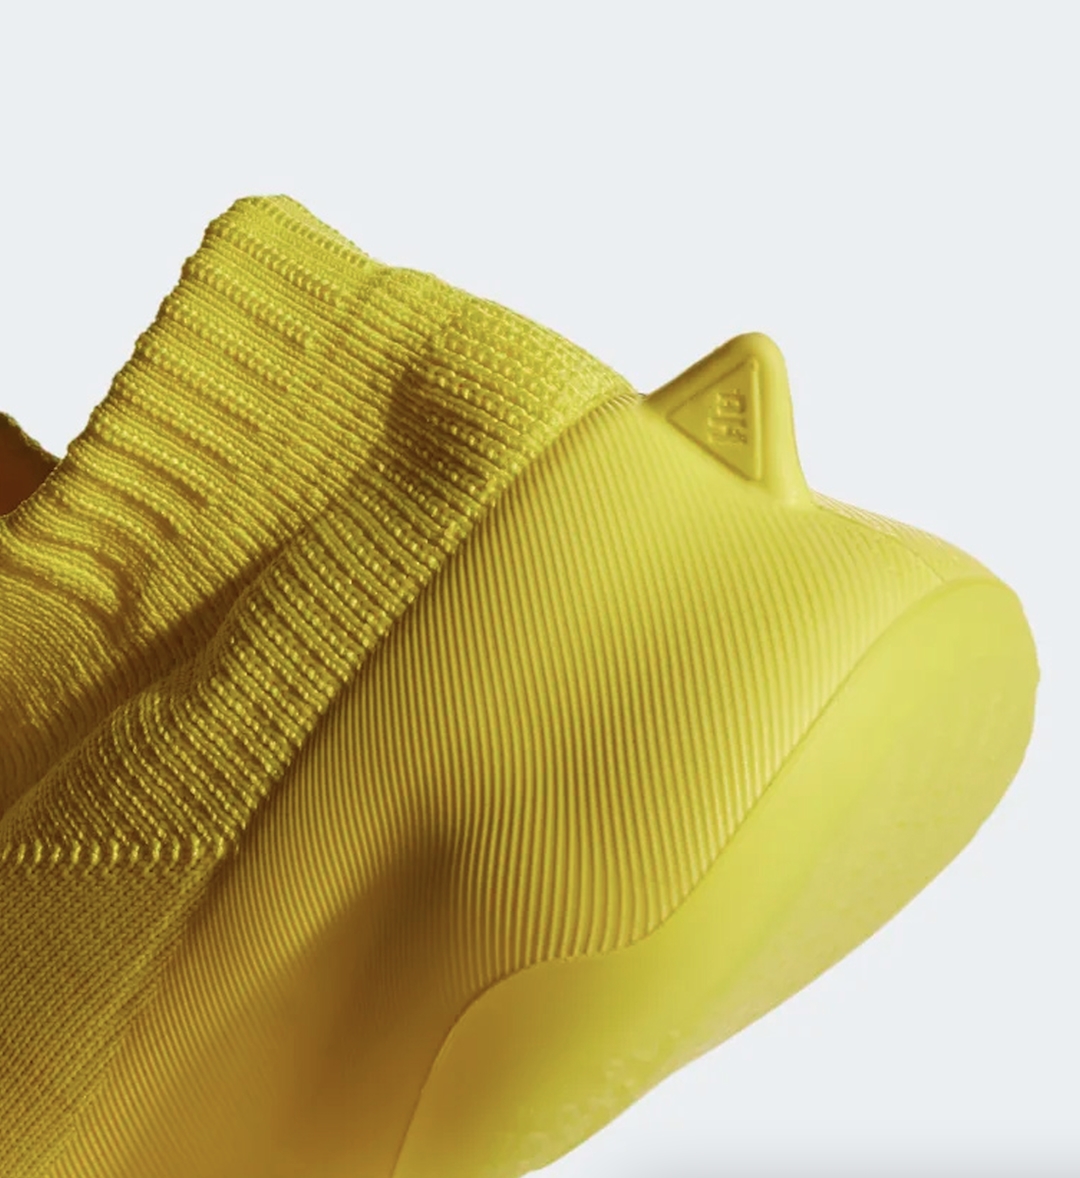 11/30 発売予定！Pharrell Williams x adidas Originals “Human Race Sichona/Shock Yellow” (ファレル・ウィリアムス アディダス オリジナルス “ヒューマンレース/ショックイエロー”) [GW4881]